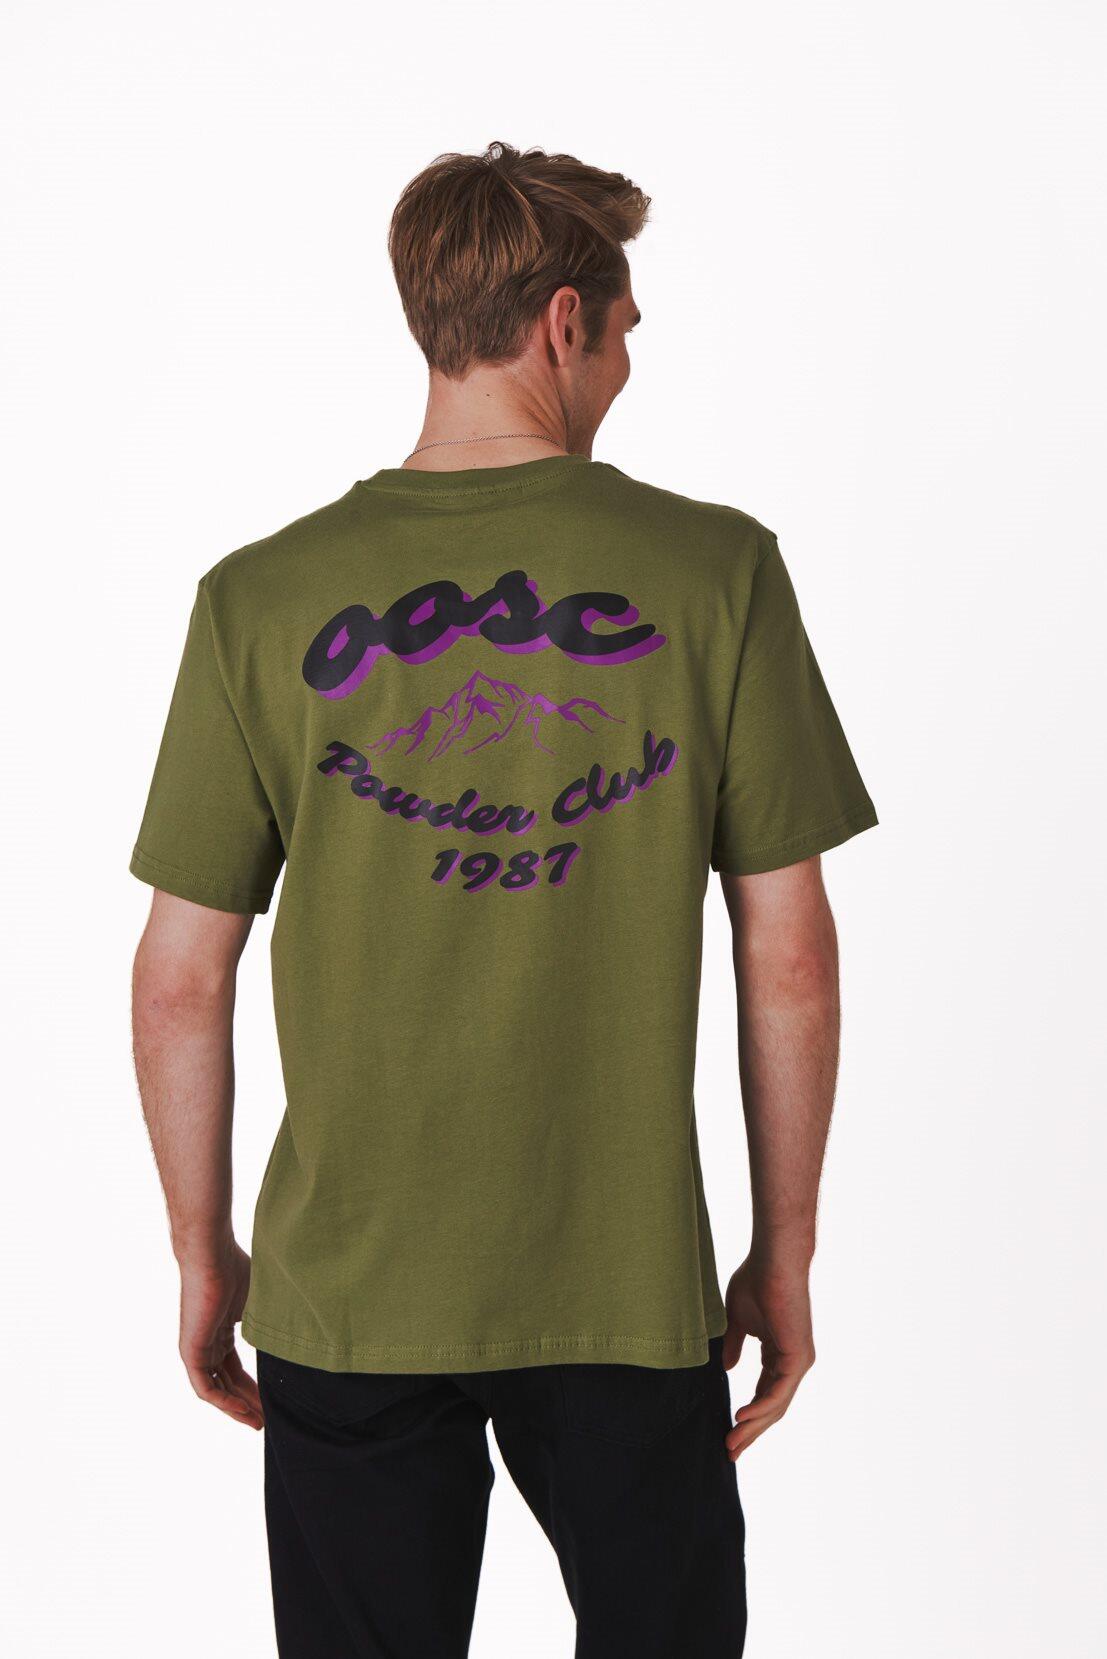 OOSC Powder Club T-Shirt